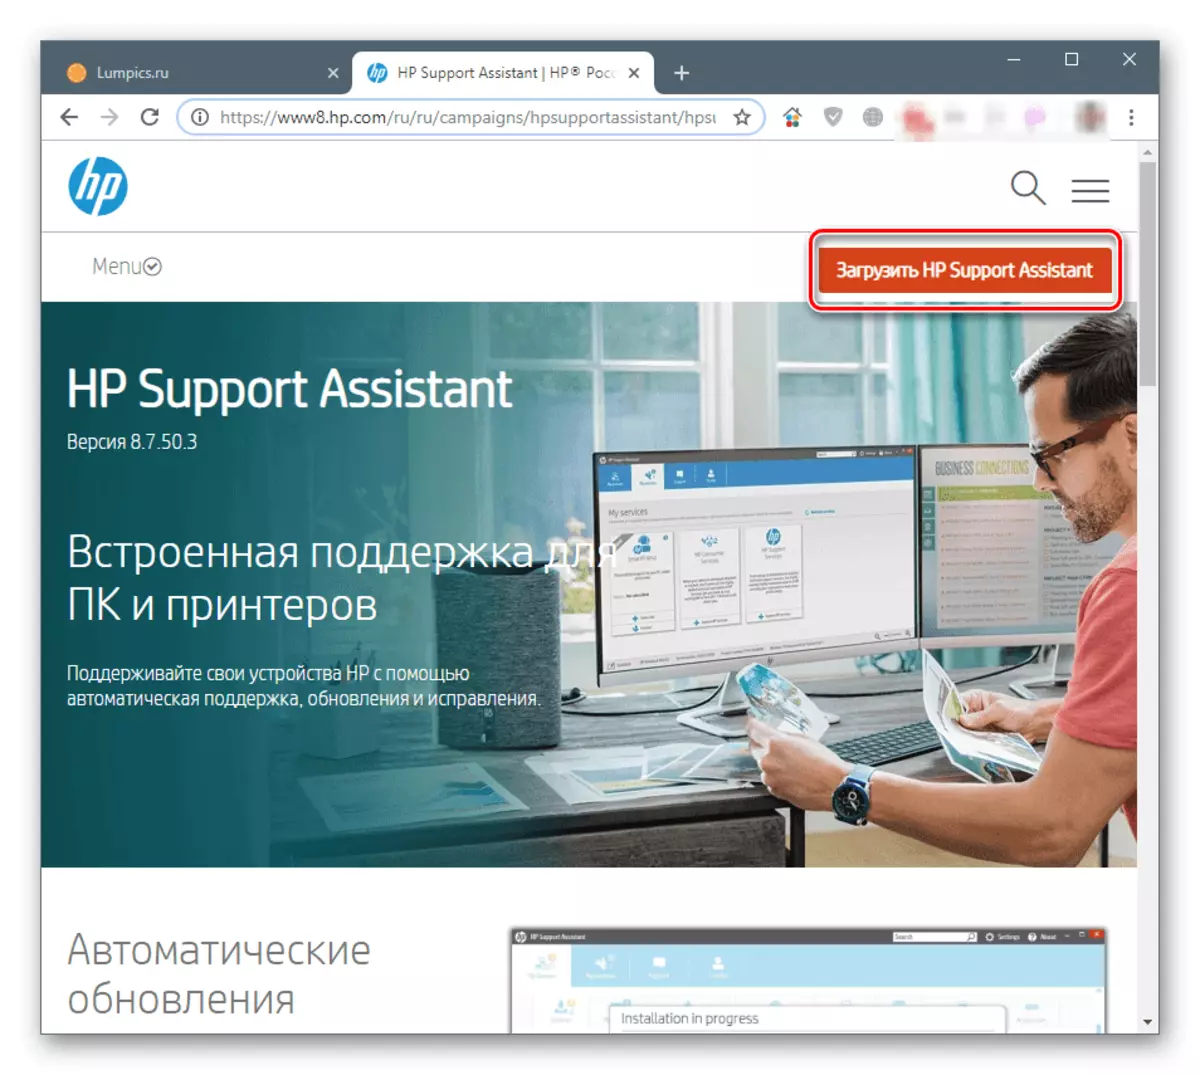 Muat turun HP Support Assistant dari laman web rasmi